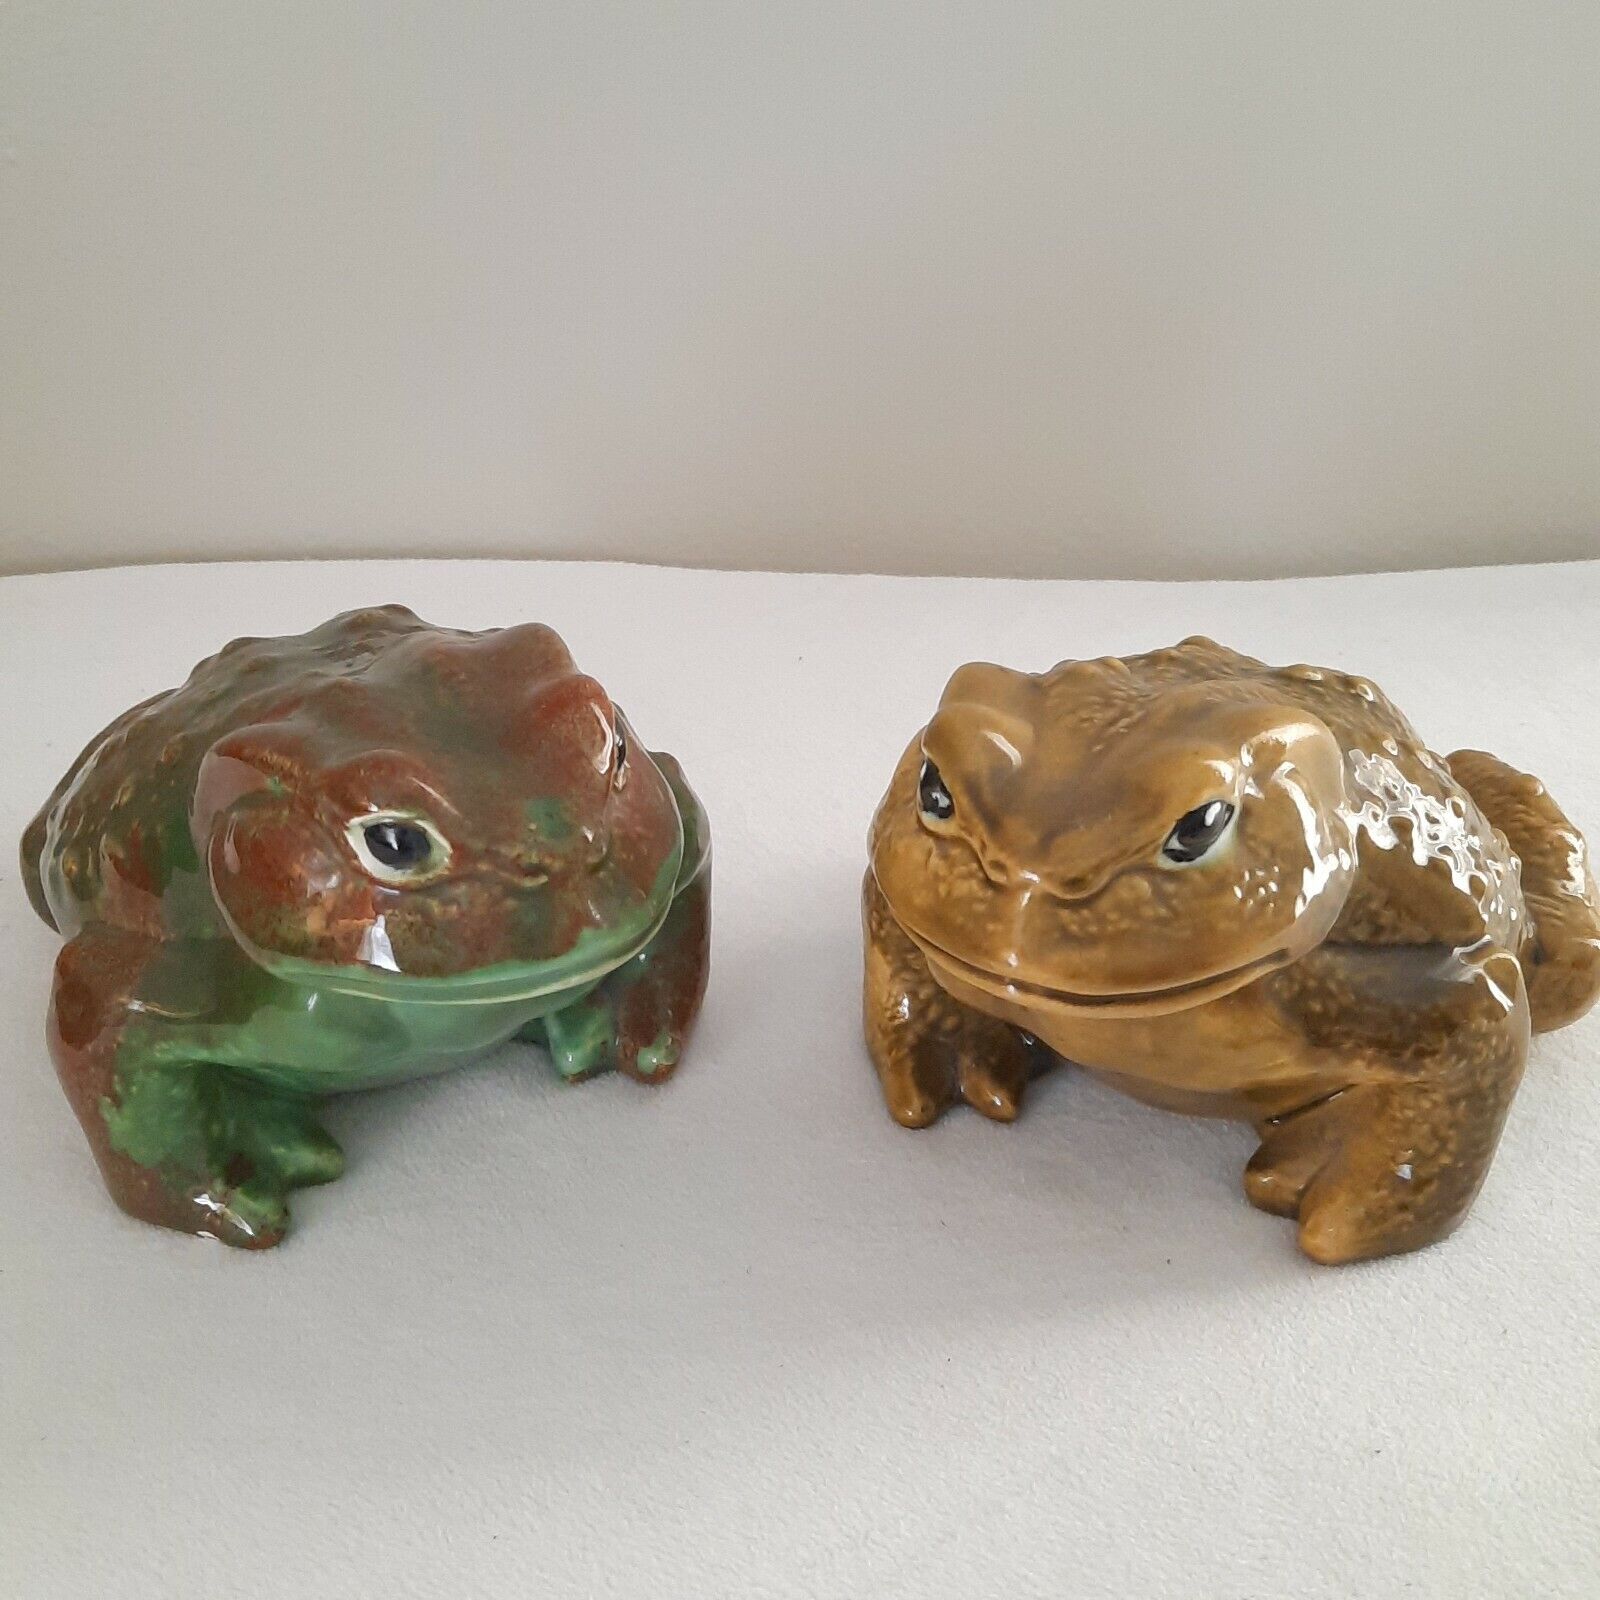 VTG Hand Glazed/Kiln Finished Green Ceramic Frog/Toads Set (2) Life Sized Arners